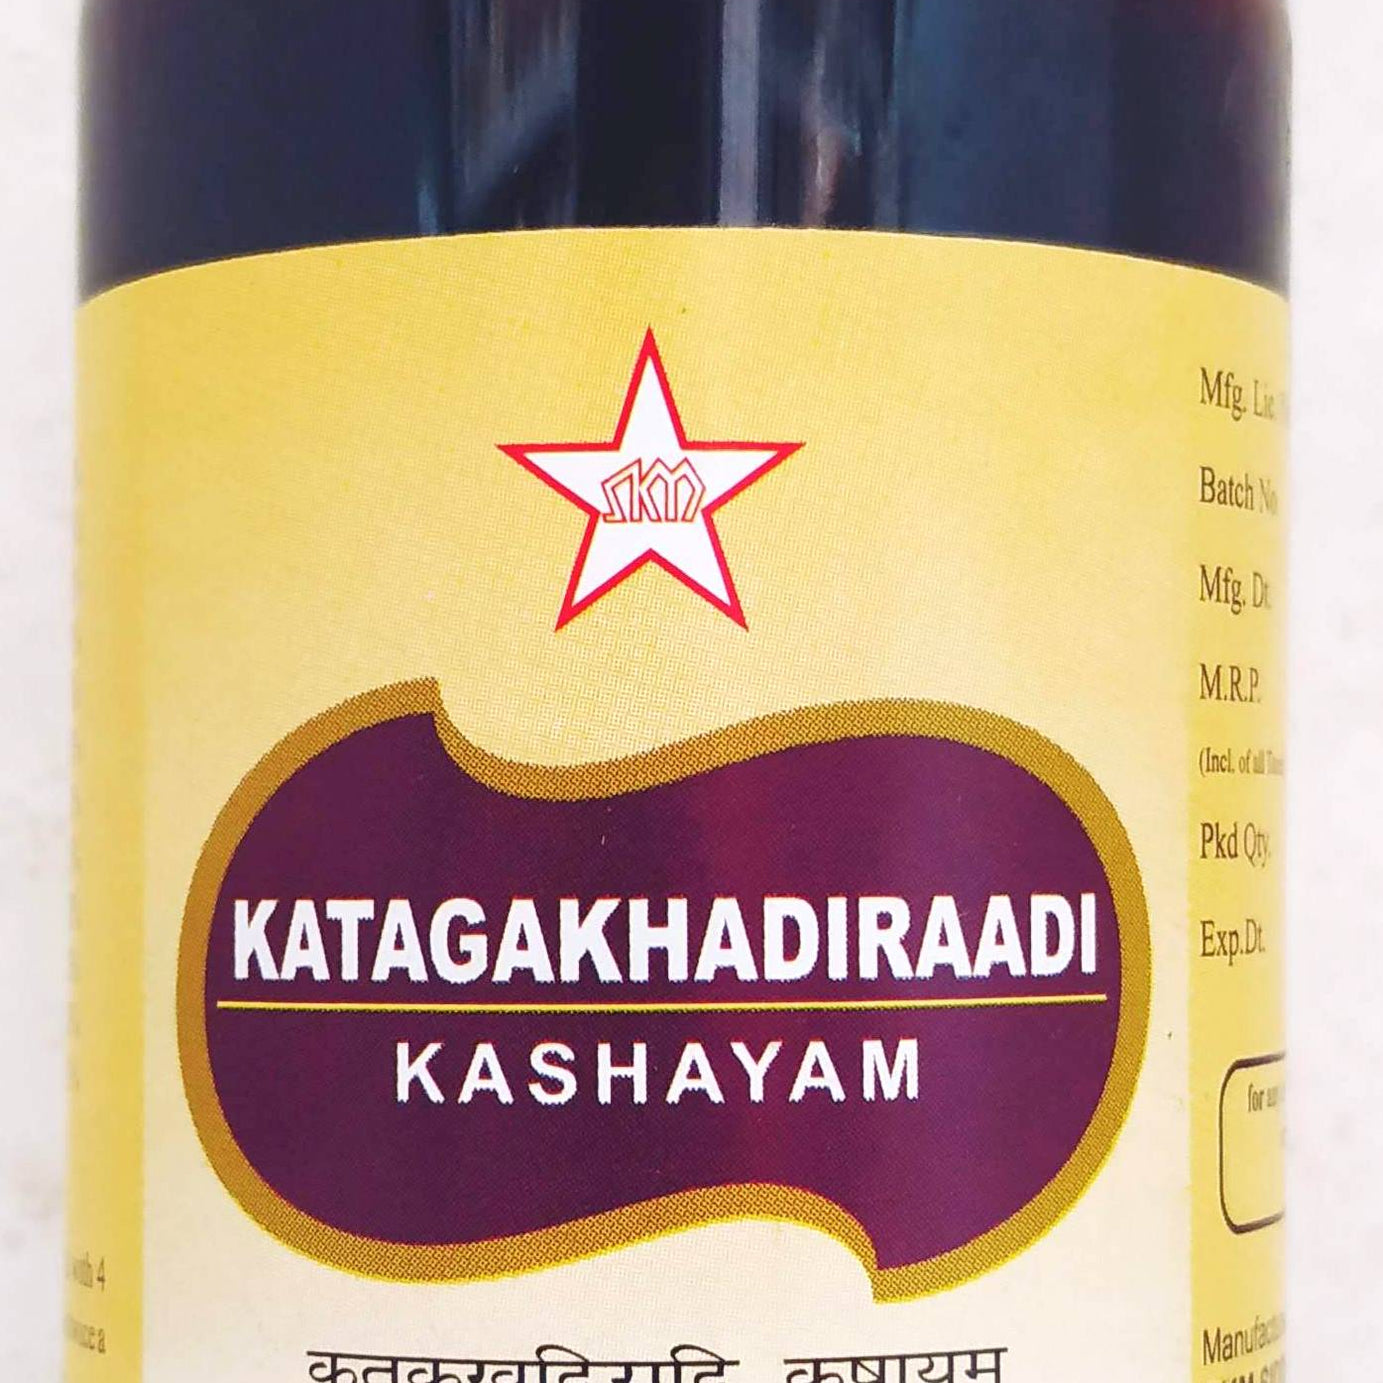 Shop Katakakhadiradi kashayam 200ml at price 105.00 from SKM Online - Ayush Care